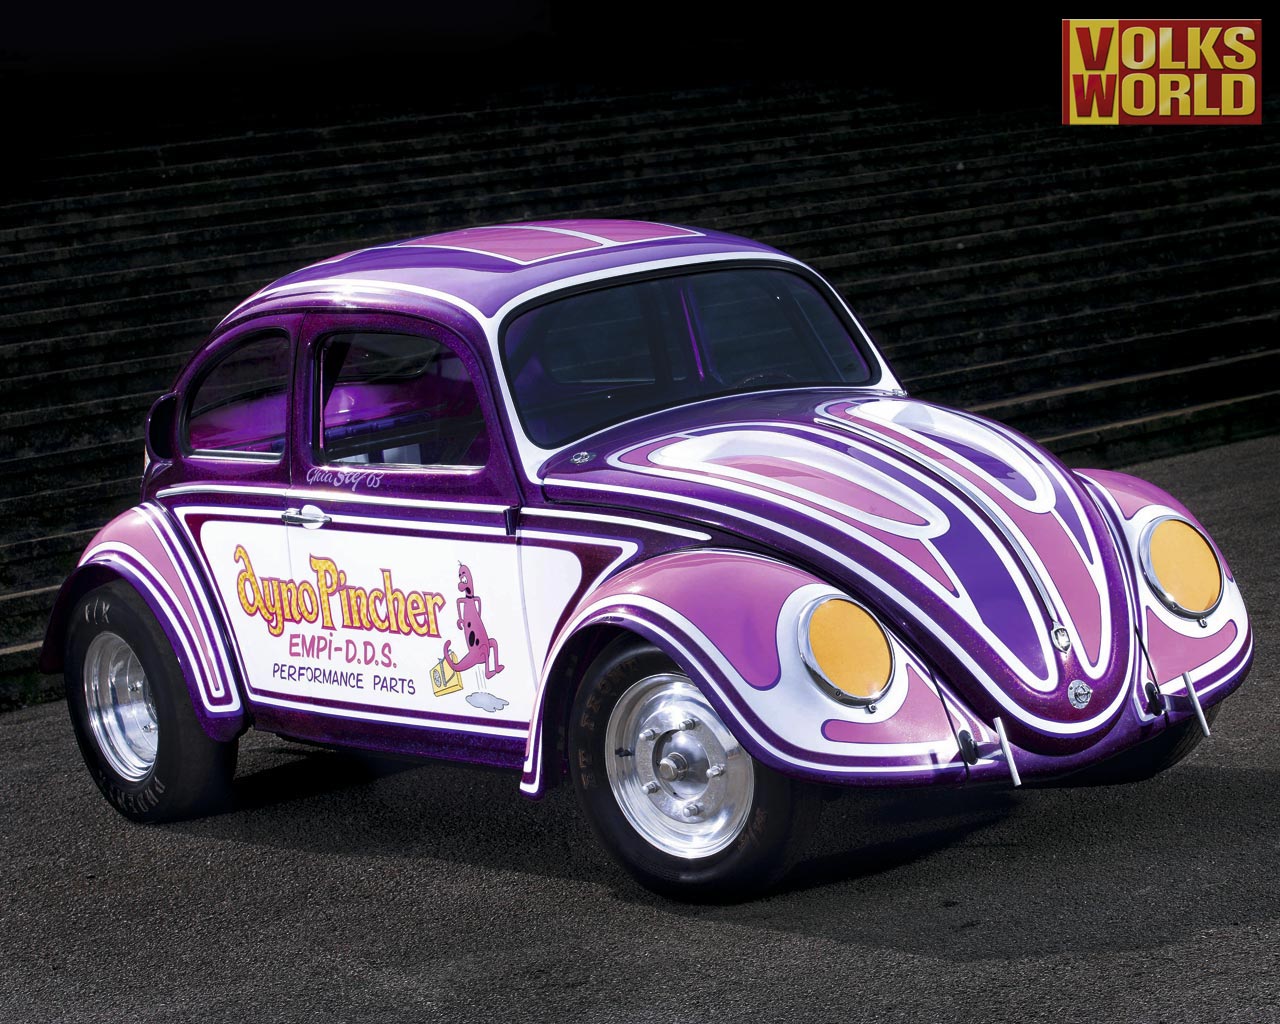 Volkswagen Beetle Wallpapers Vdub Newscom 1280x1024